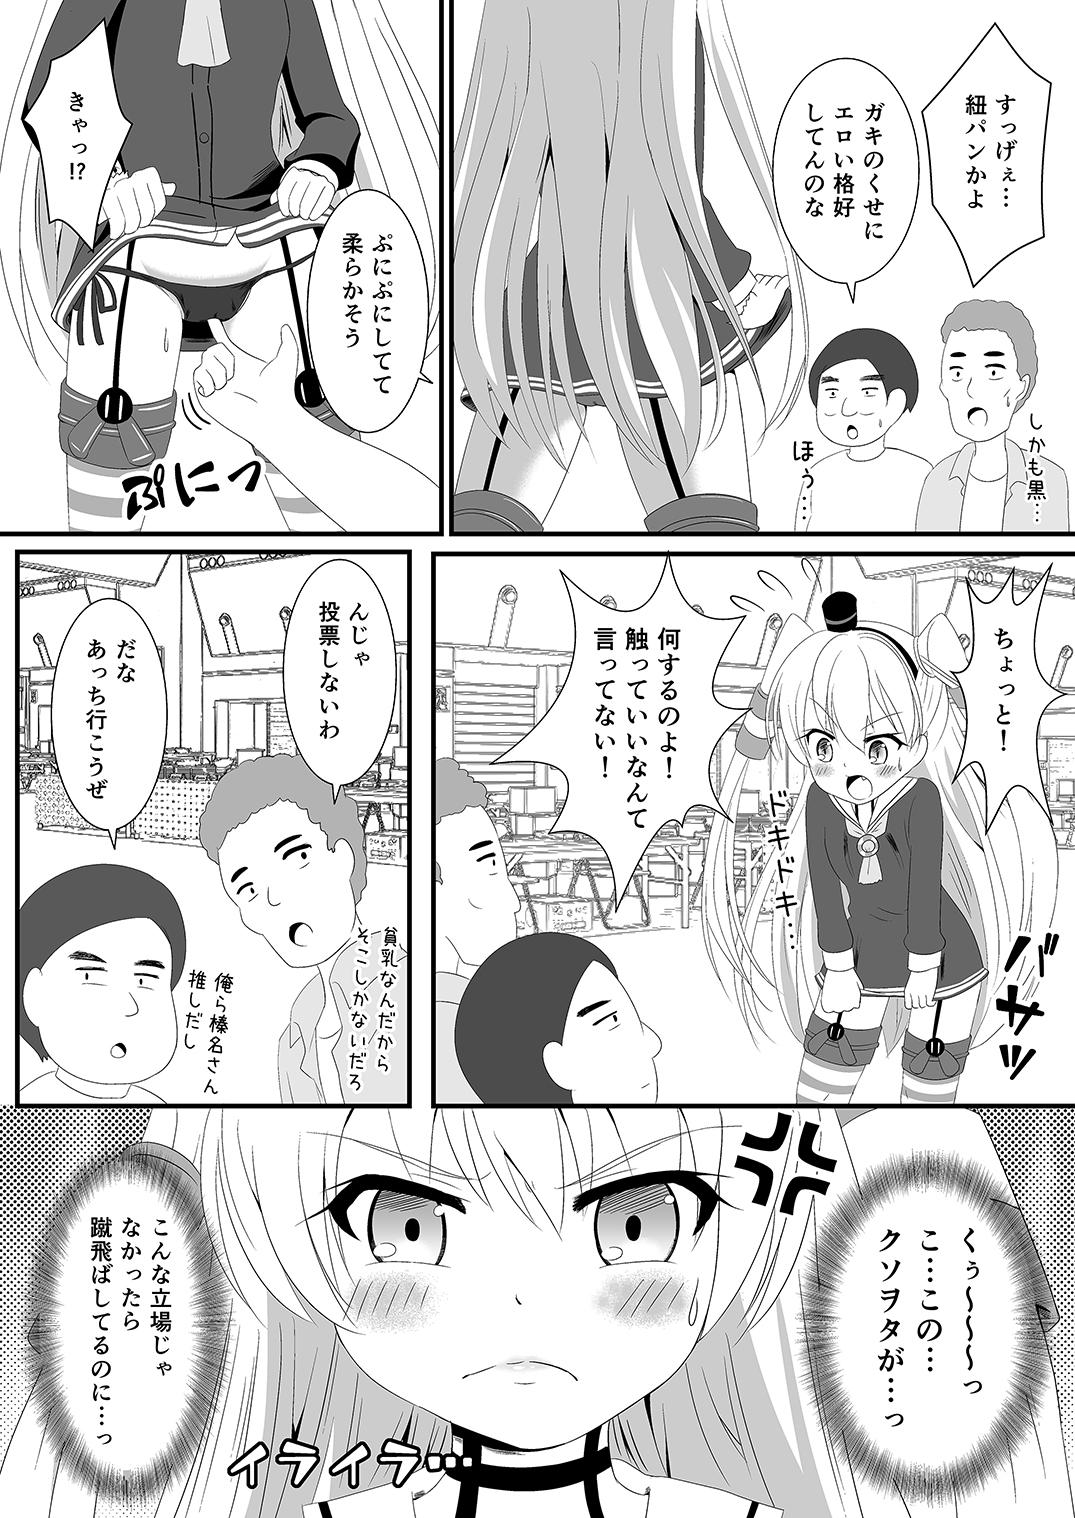 Pounding Amatsukaze wa Ichi no Tamenara Nandemosurumon! - Kantai collection Asians - Page 8